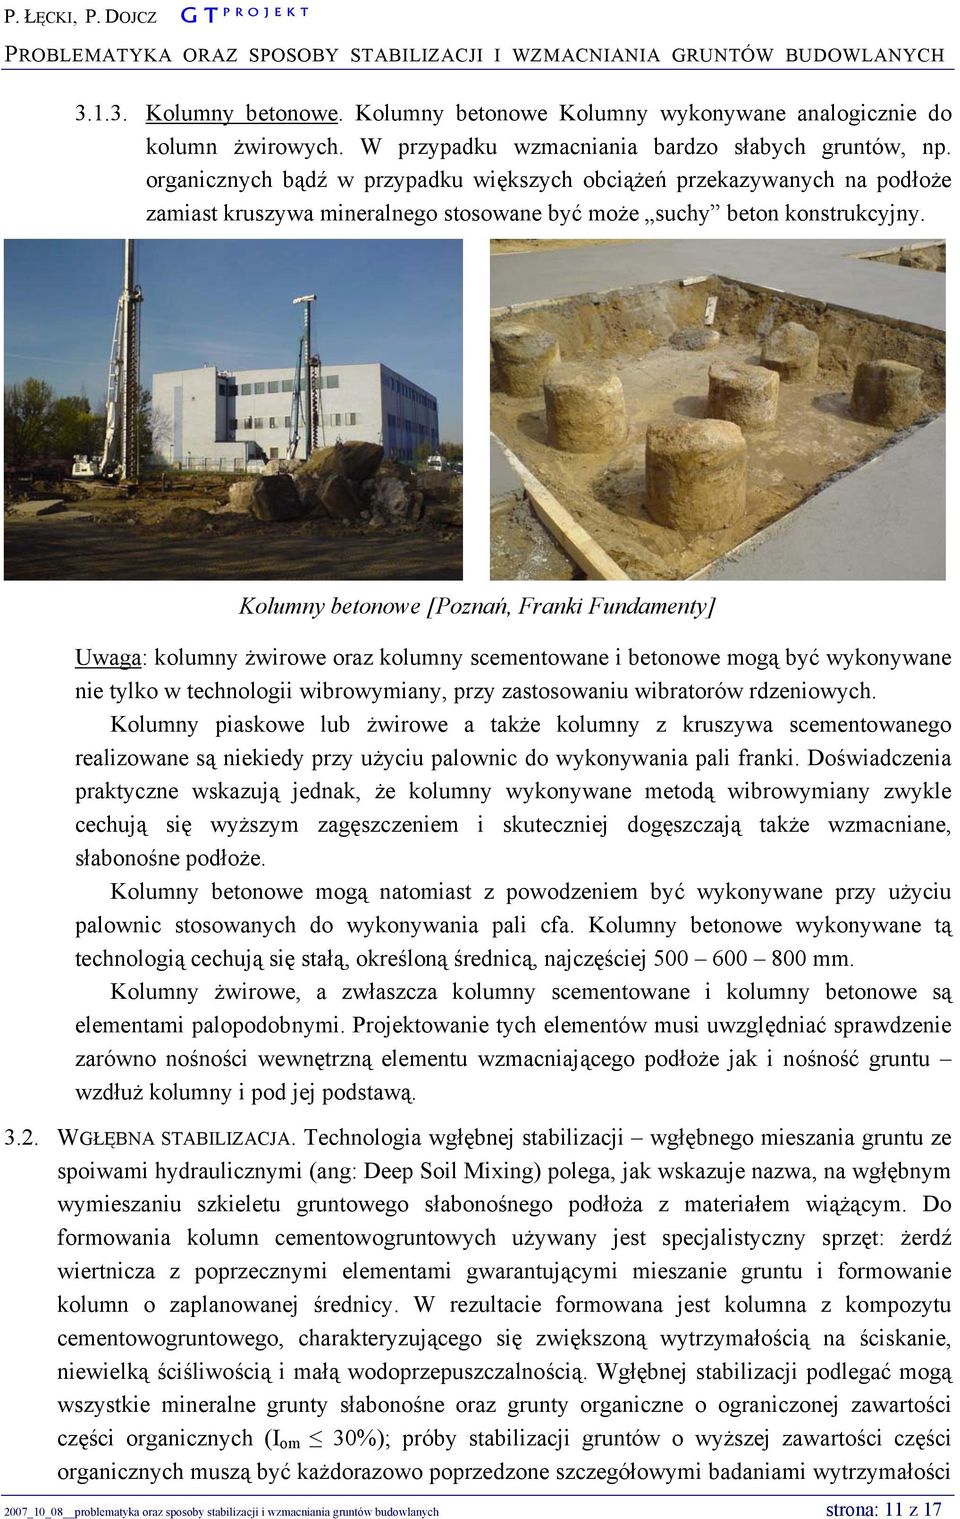 Kolumny betonowe [Poznań, Franki Fundamenty] Uwaga: kolumny żwirowe oraz kolumny scementowane i betonowe mogą być wykonywane nie tylko w technologii wibrowymiany, przy zastosowaniu wibratorów